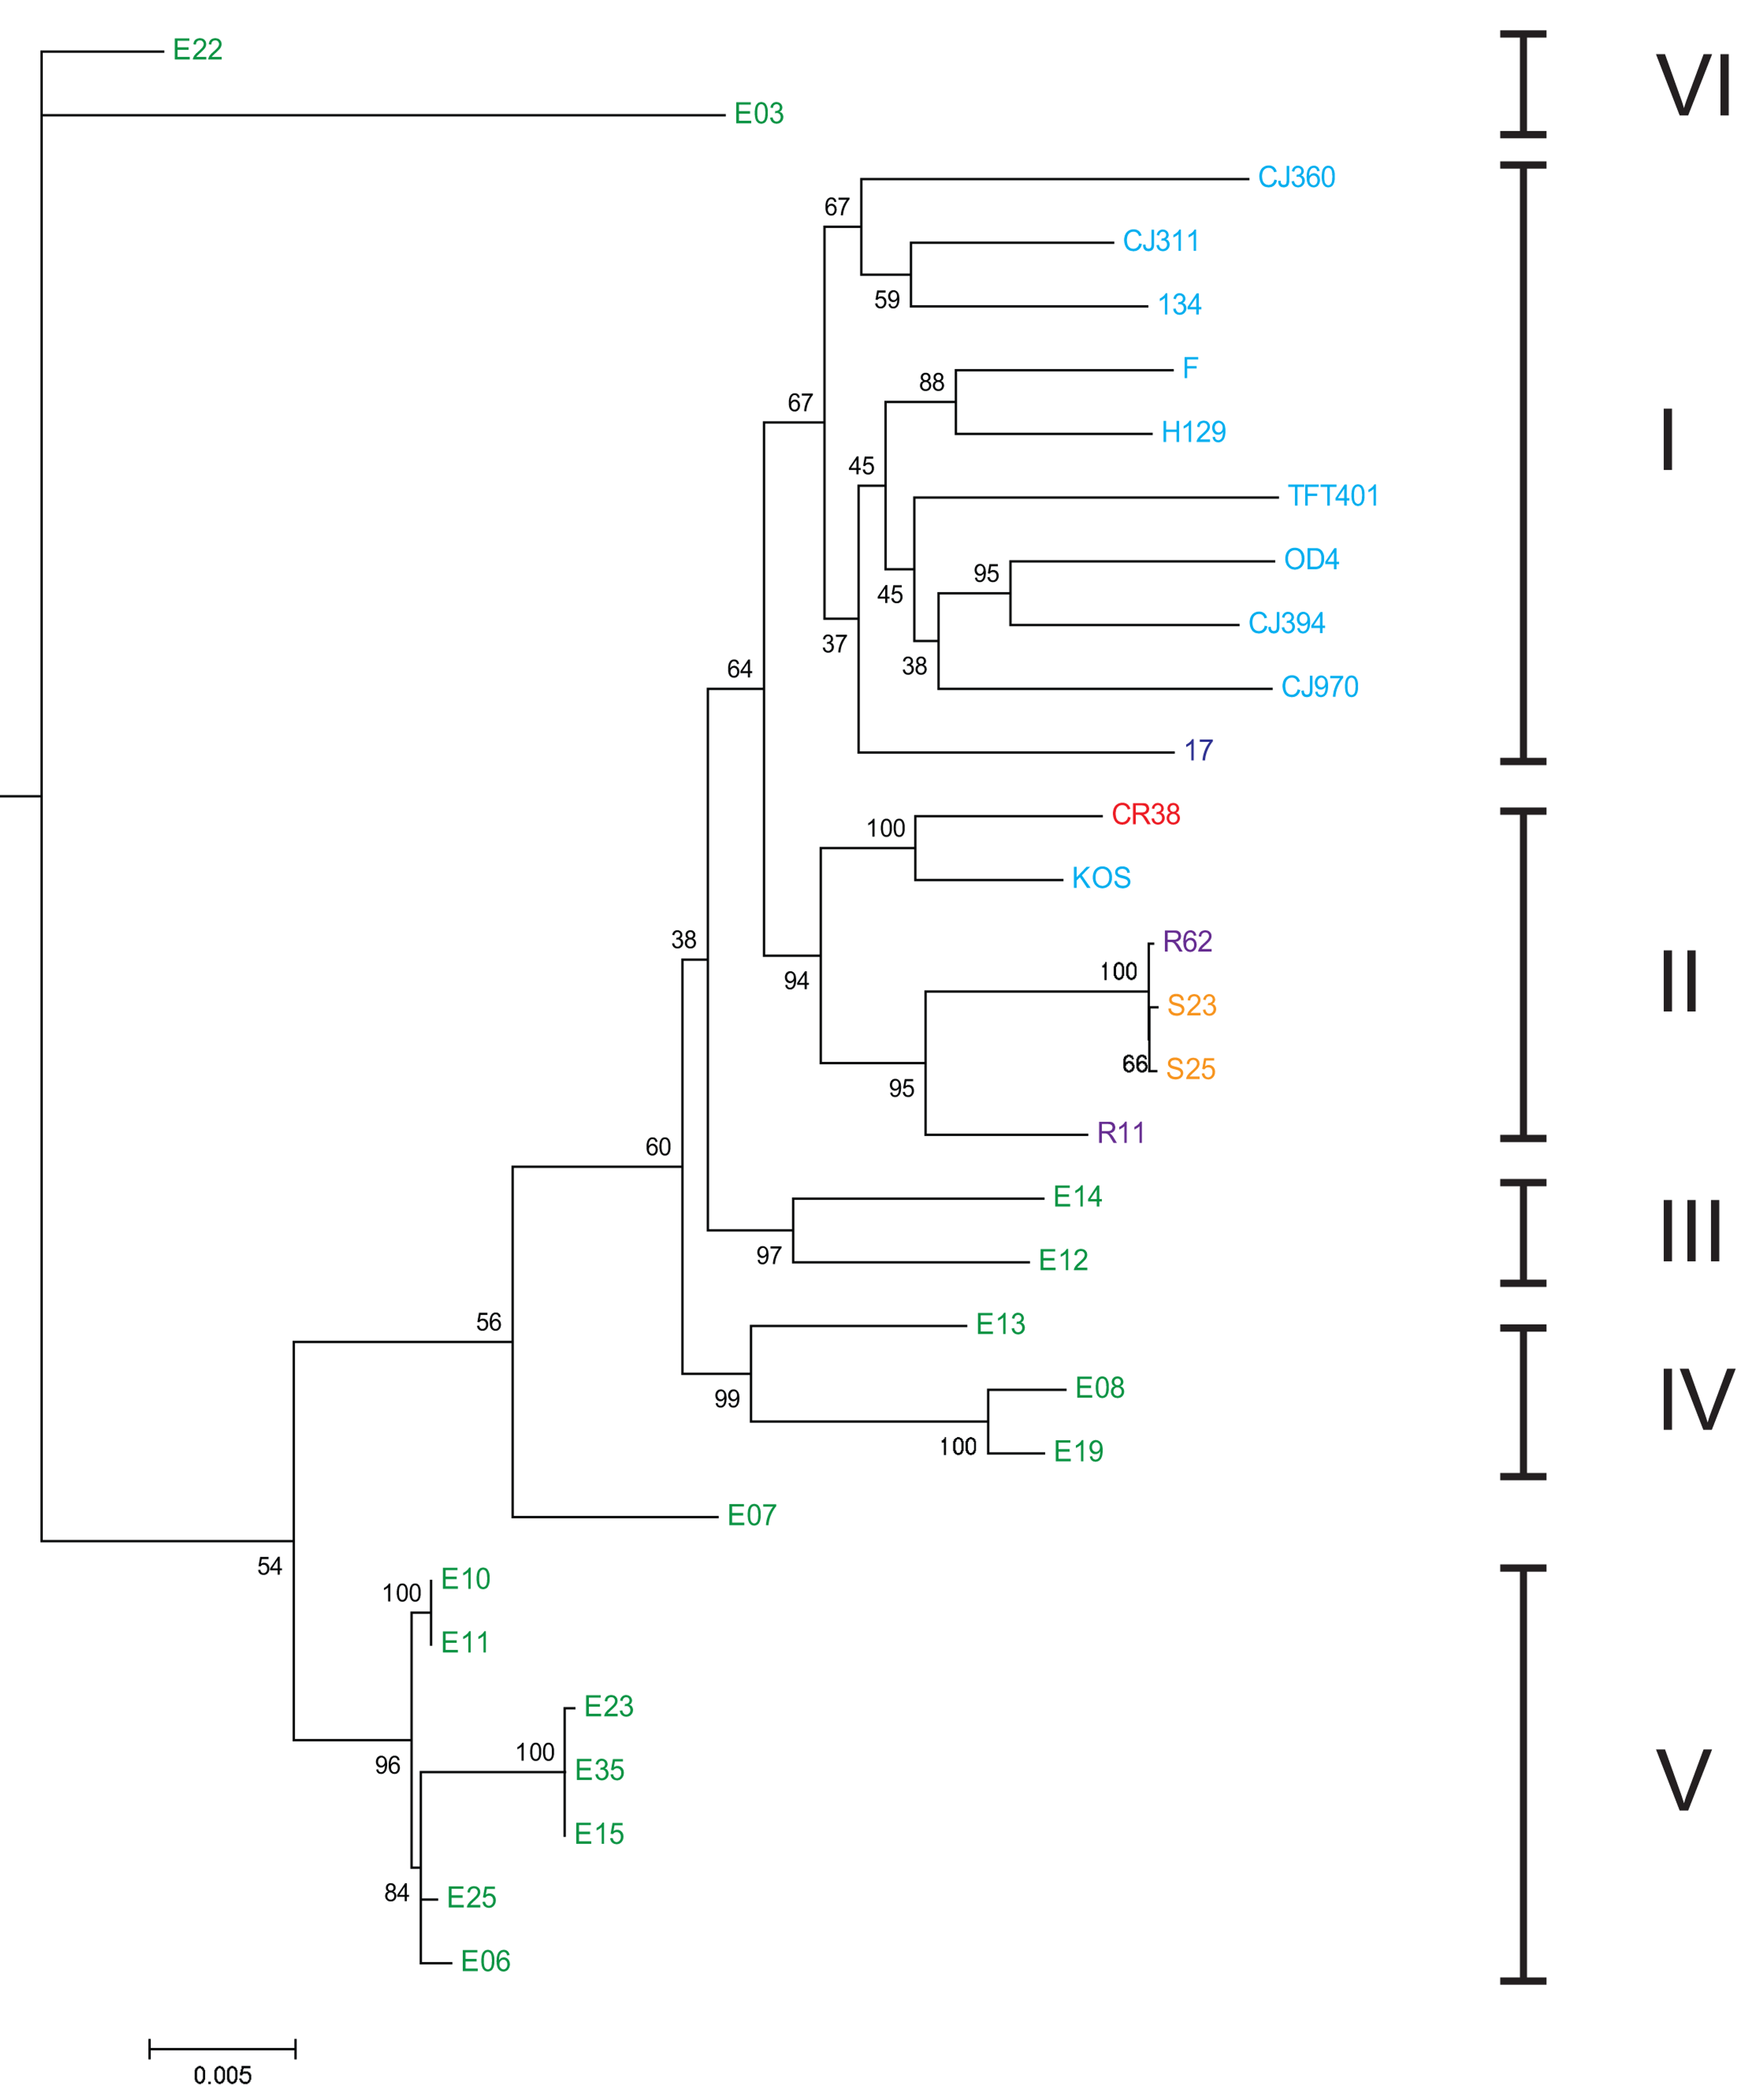 Árbol filogenético ML enraizado (HSV-2 se uso como grupo externo) de las distintas variedades de VHS-1 y su correlación con los 6 grupos de poblaciones humanas establecidas en en estudio (números latinos a la derecha). Nótese como cada clado corresponde a una población en particular, evidenciando una co-evolución del virus con cada población humana. De allí que el análisis de diversidad genética de HSV-2 resulta en  una herramienta de análisis de migración y biogeografía humana. Los aislados virales de poblaciones actuales están coloreados según el país de origen: EE.UU.: azul claro, Reino Unido: azul oscuro, China: rojo, Corea del Sur: púrpura, Japón: amarillo y Kenia: verde, tomado de @kolb2013using